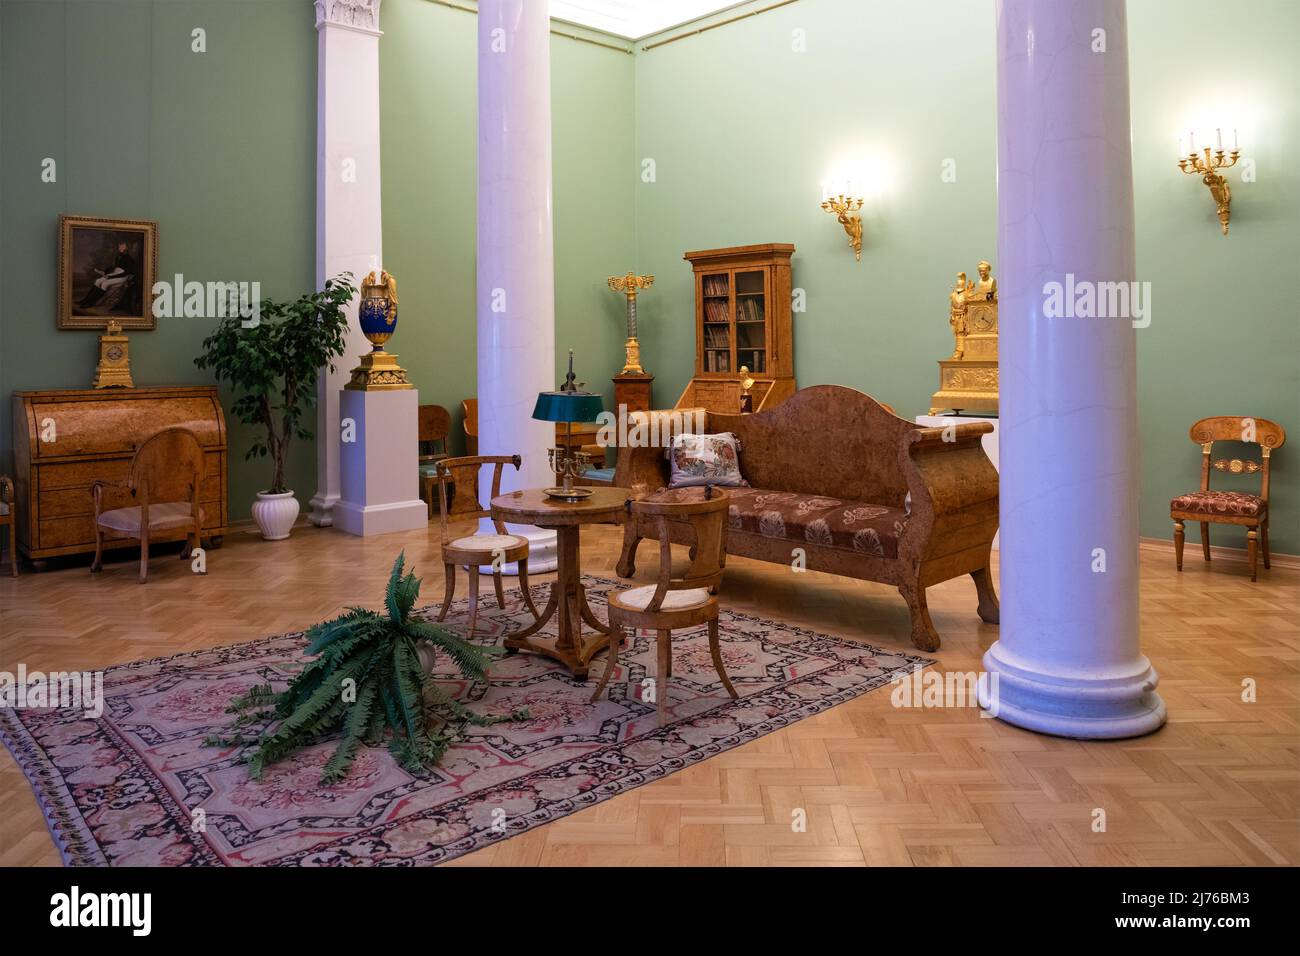 SAN PETERSBURGO, RUSIA - 17 DE FEBRERO de 2022: Interior de un clásico salón de dibujo de una casa noble de finales del siglo 18th. Exposición del Estado Hermitage Foto de stock